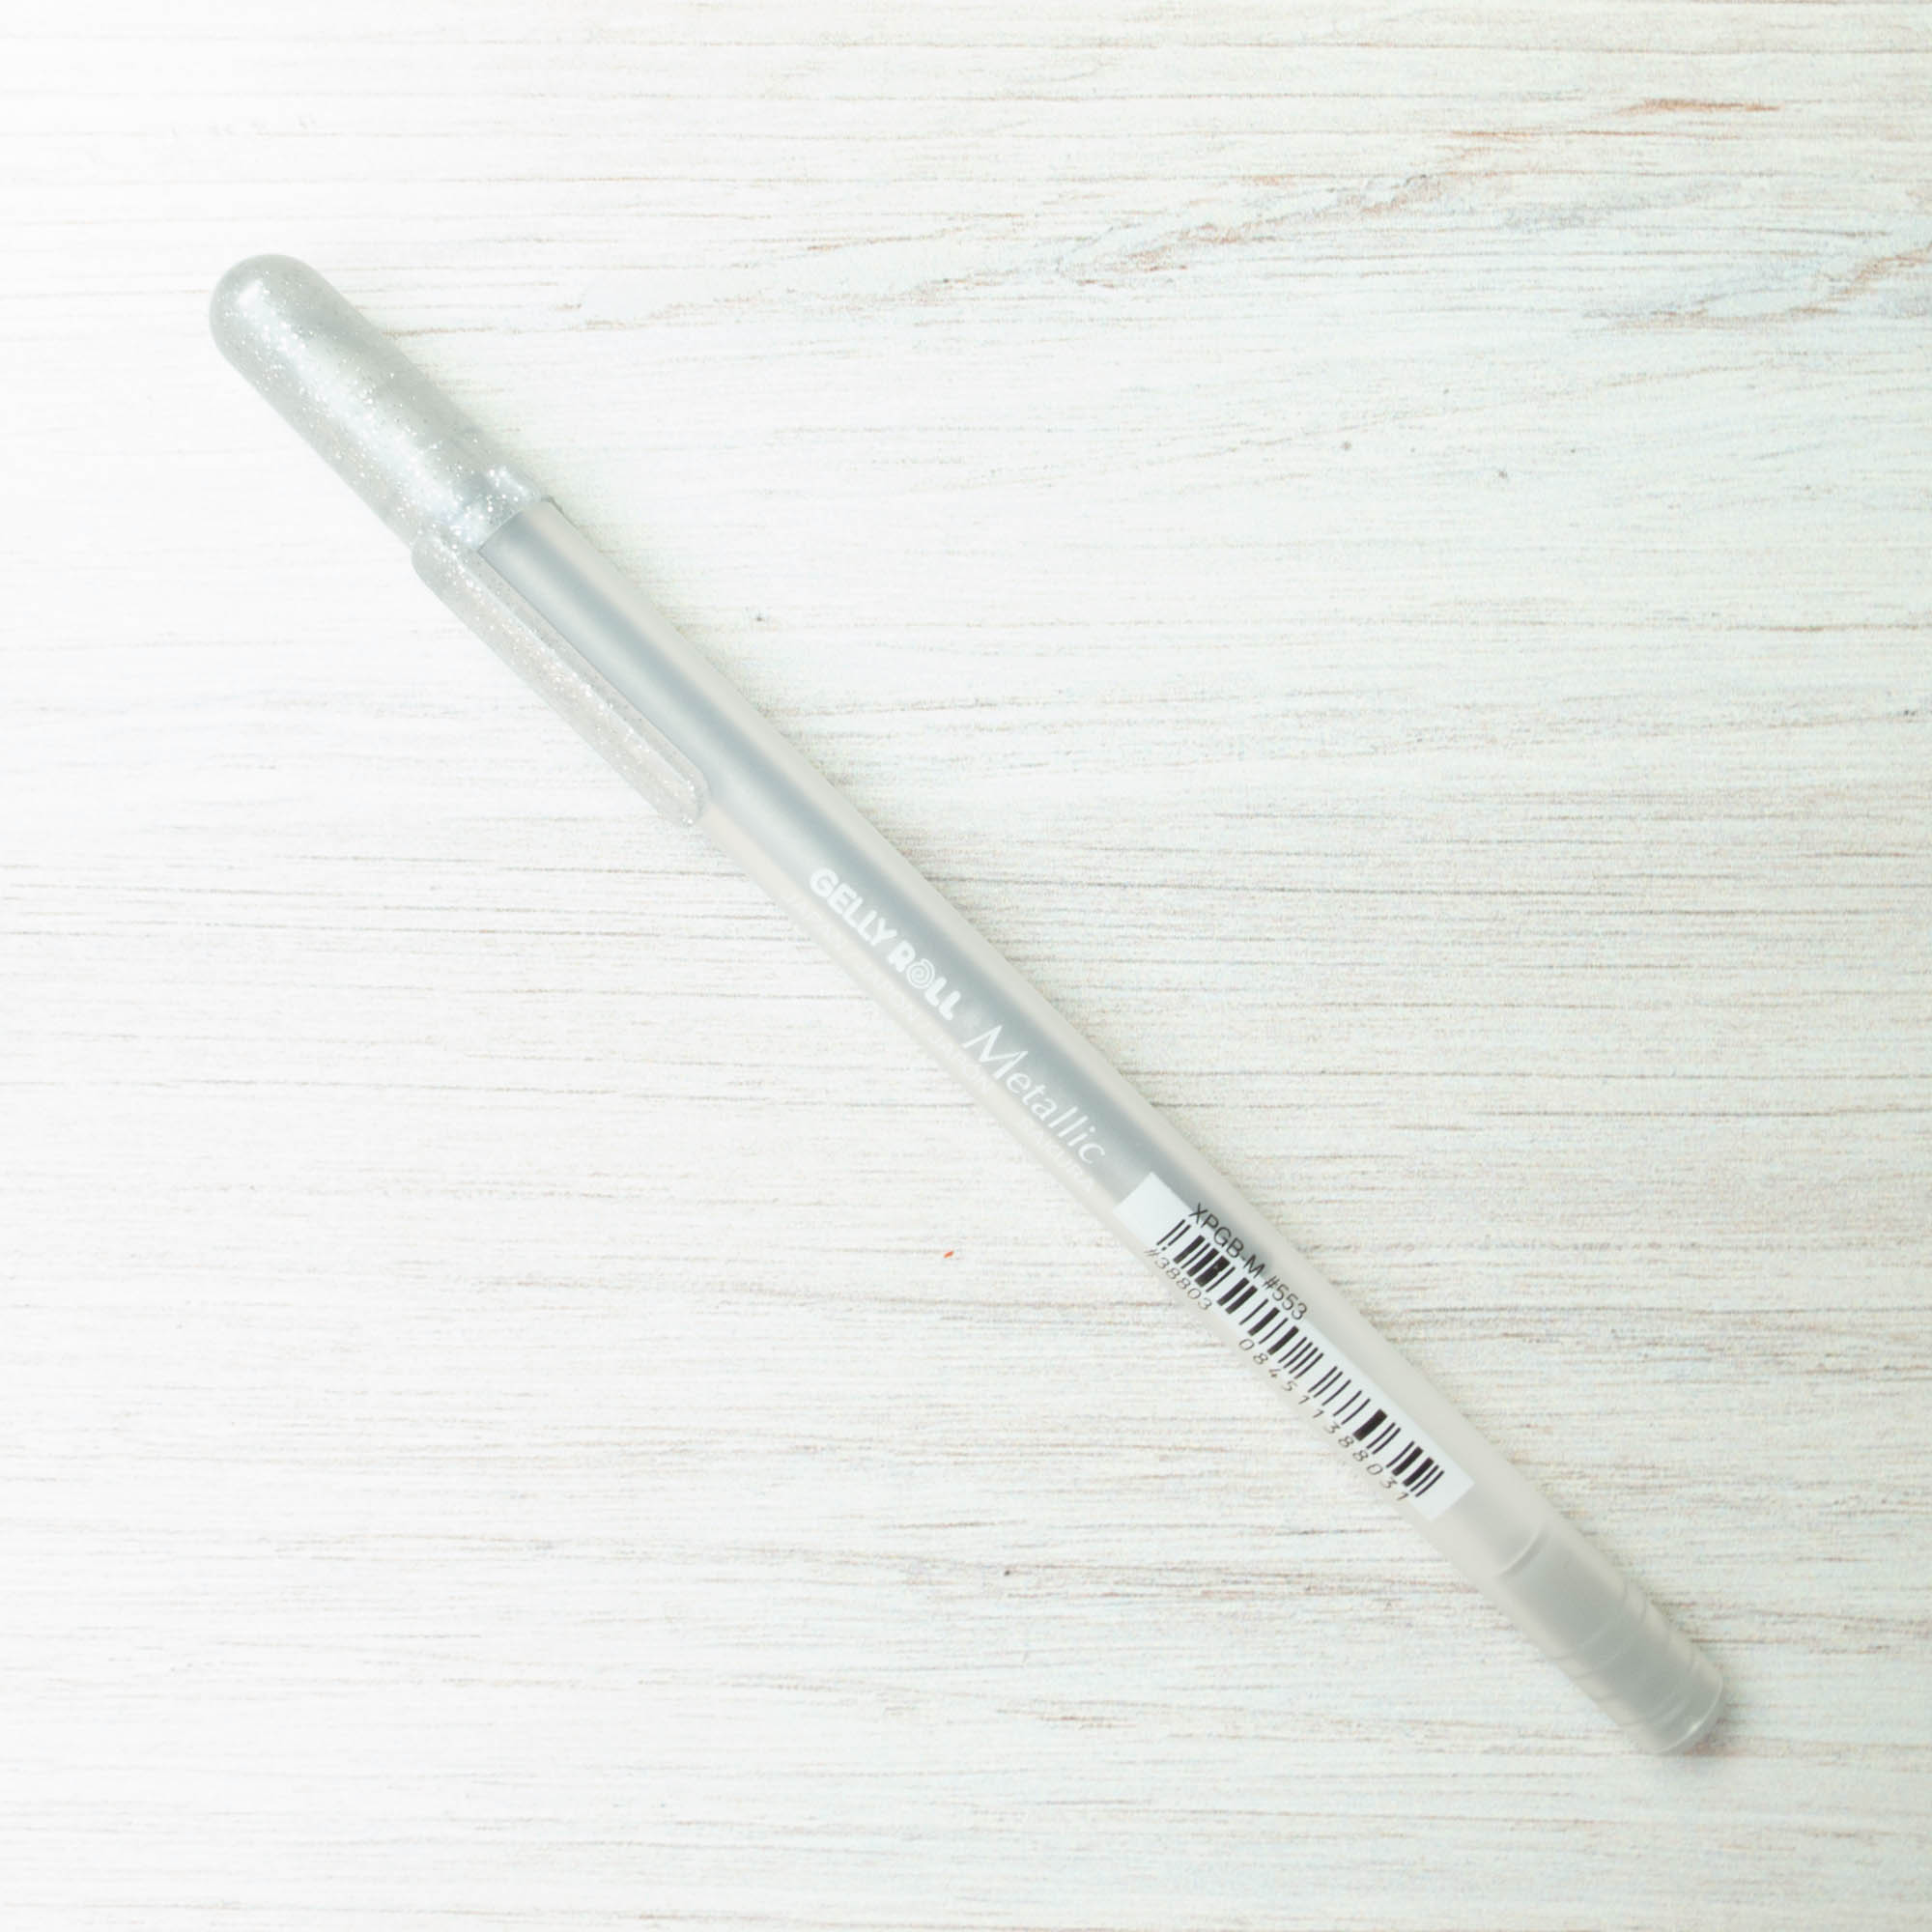 Sakura Gel Pen, Water/Fade Proof, 1.0mm, Medium Line, Metallic